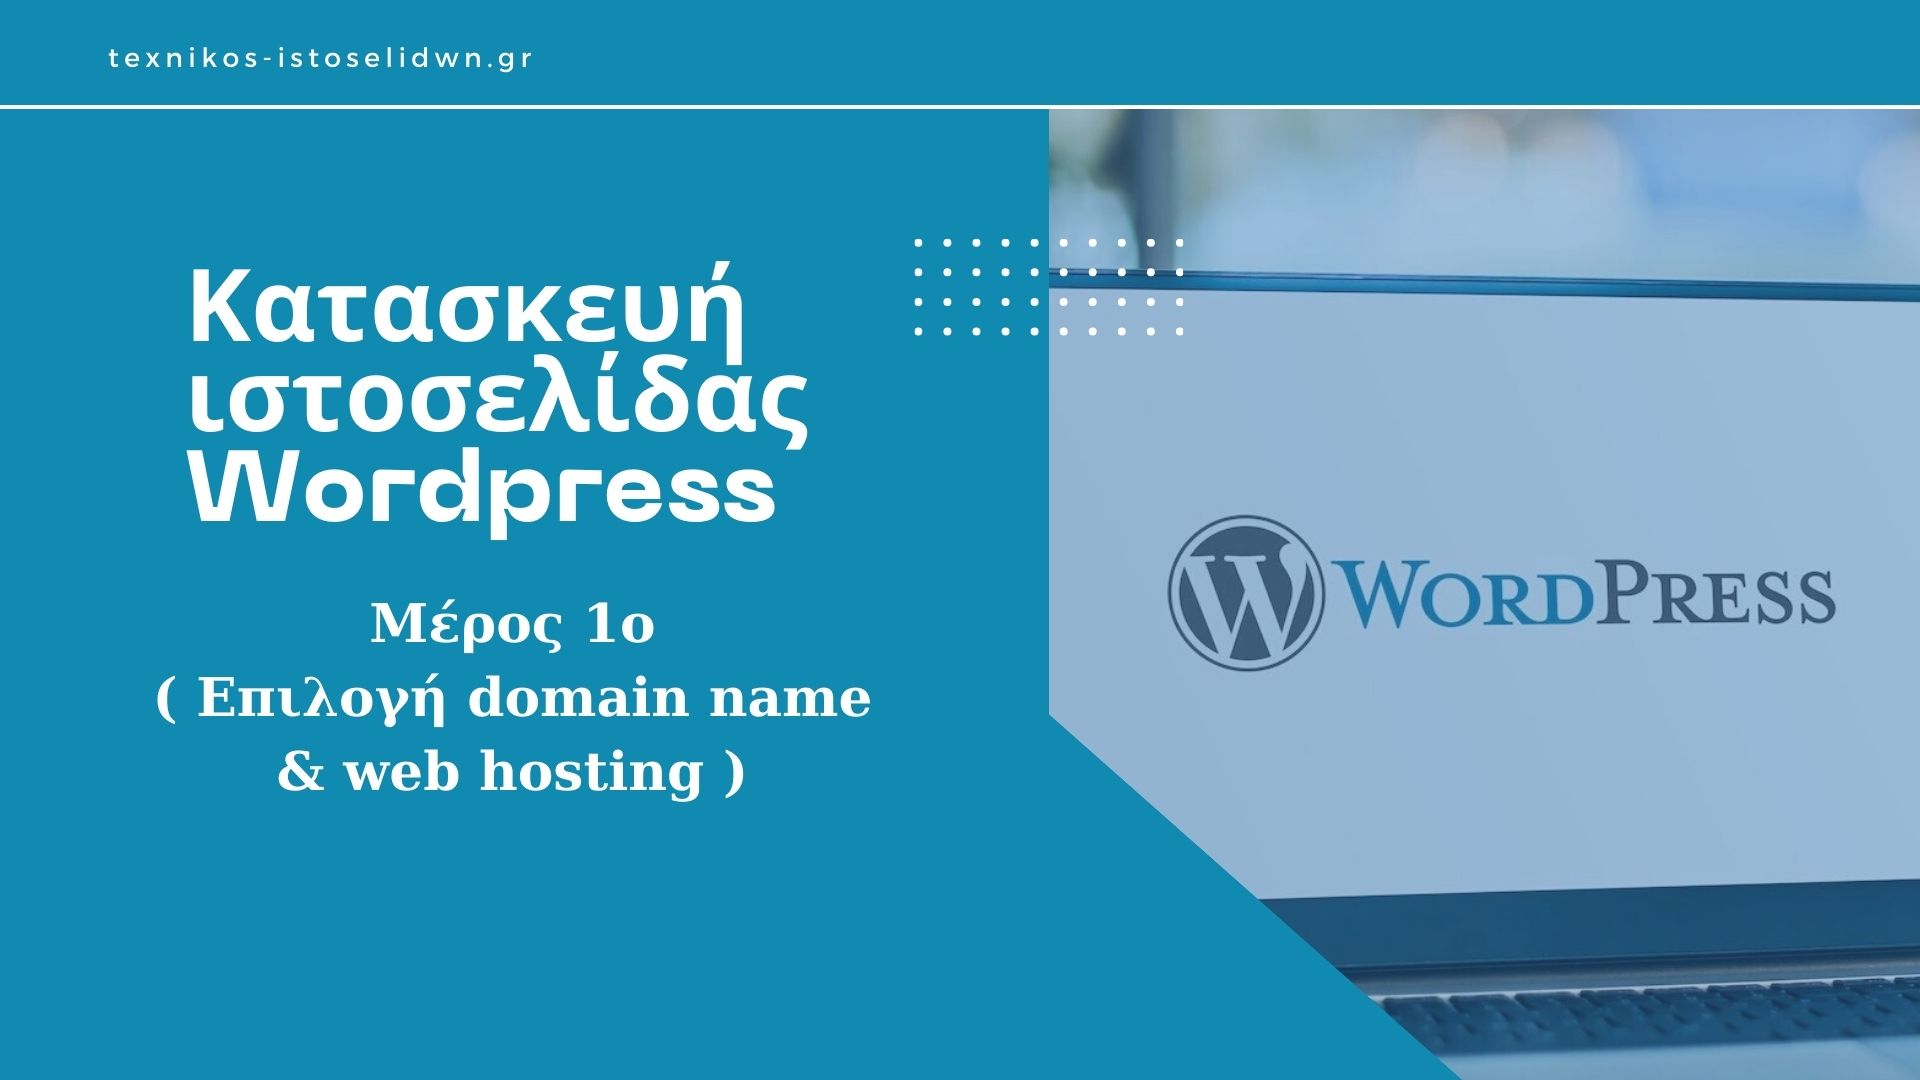 Πως επιλέγουμε domain name & web hosting για μία ιστοσελίδα.